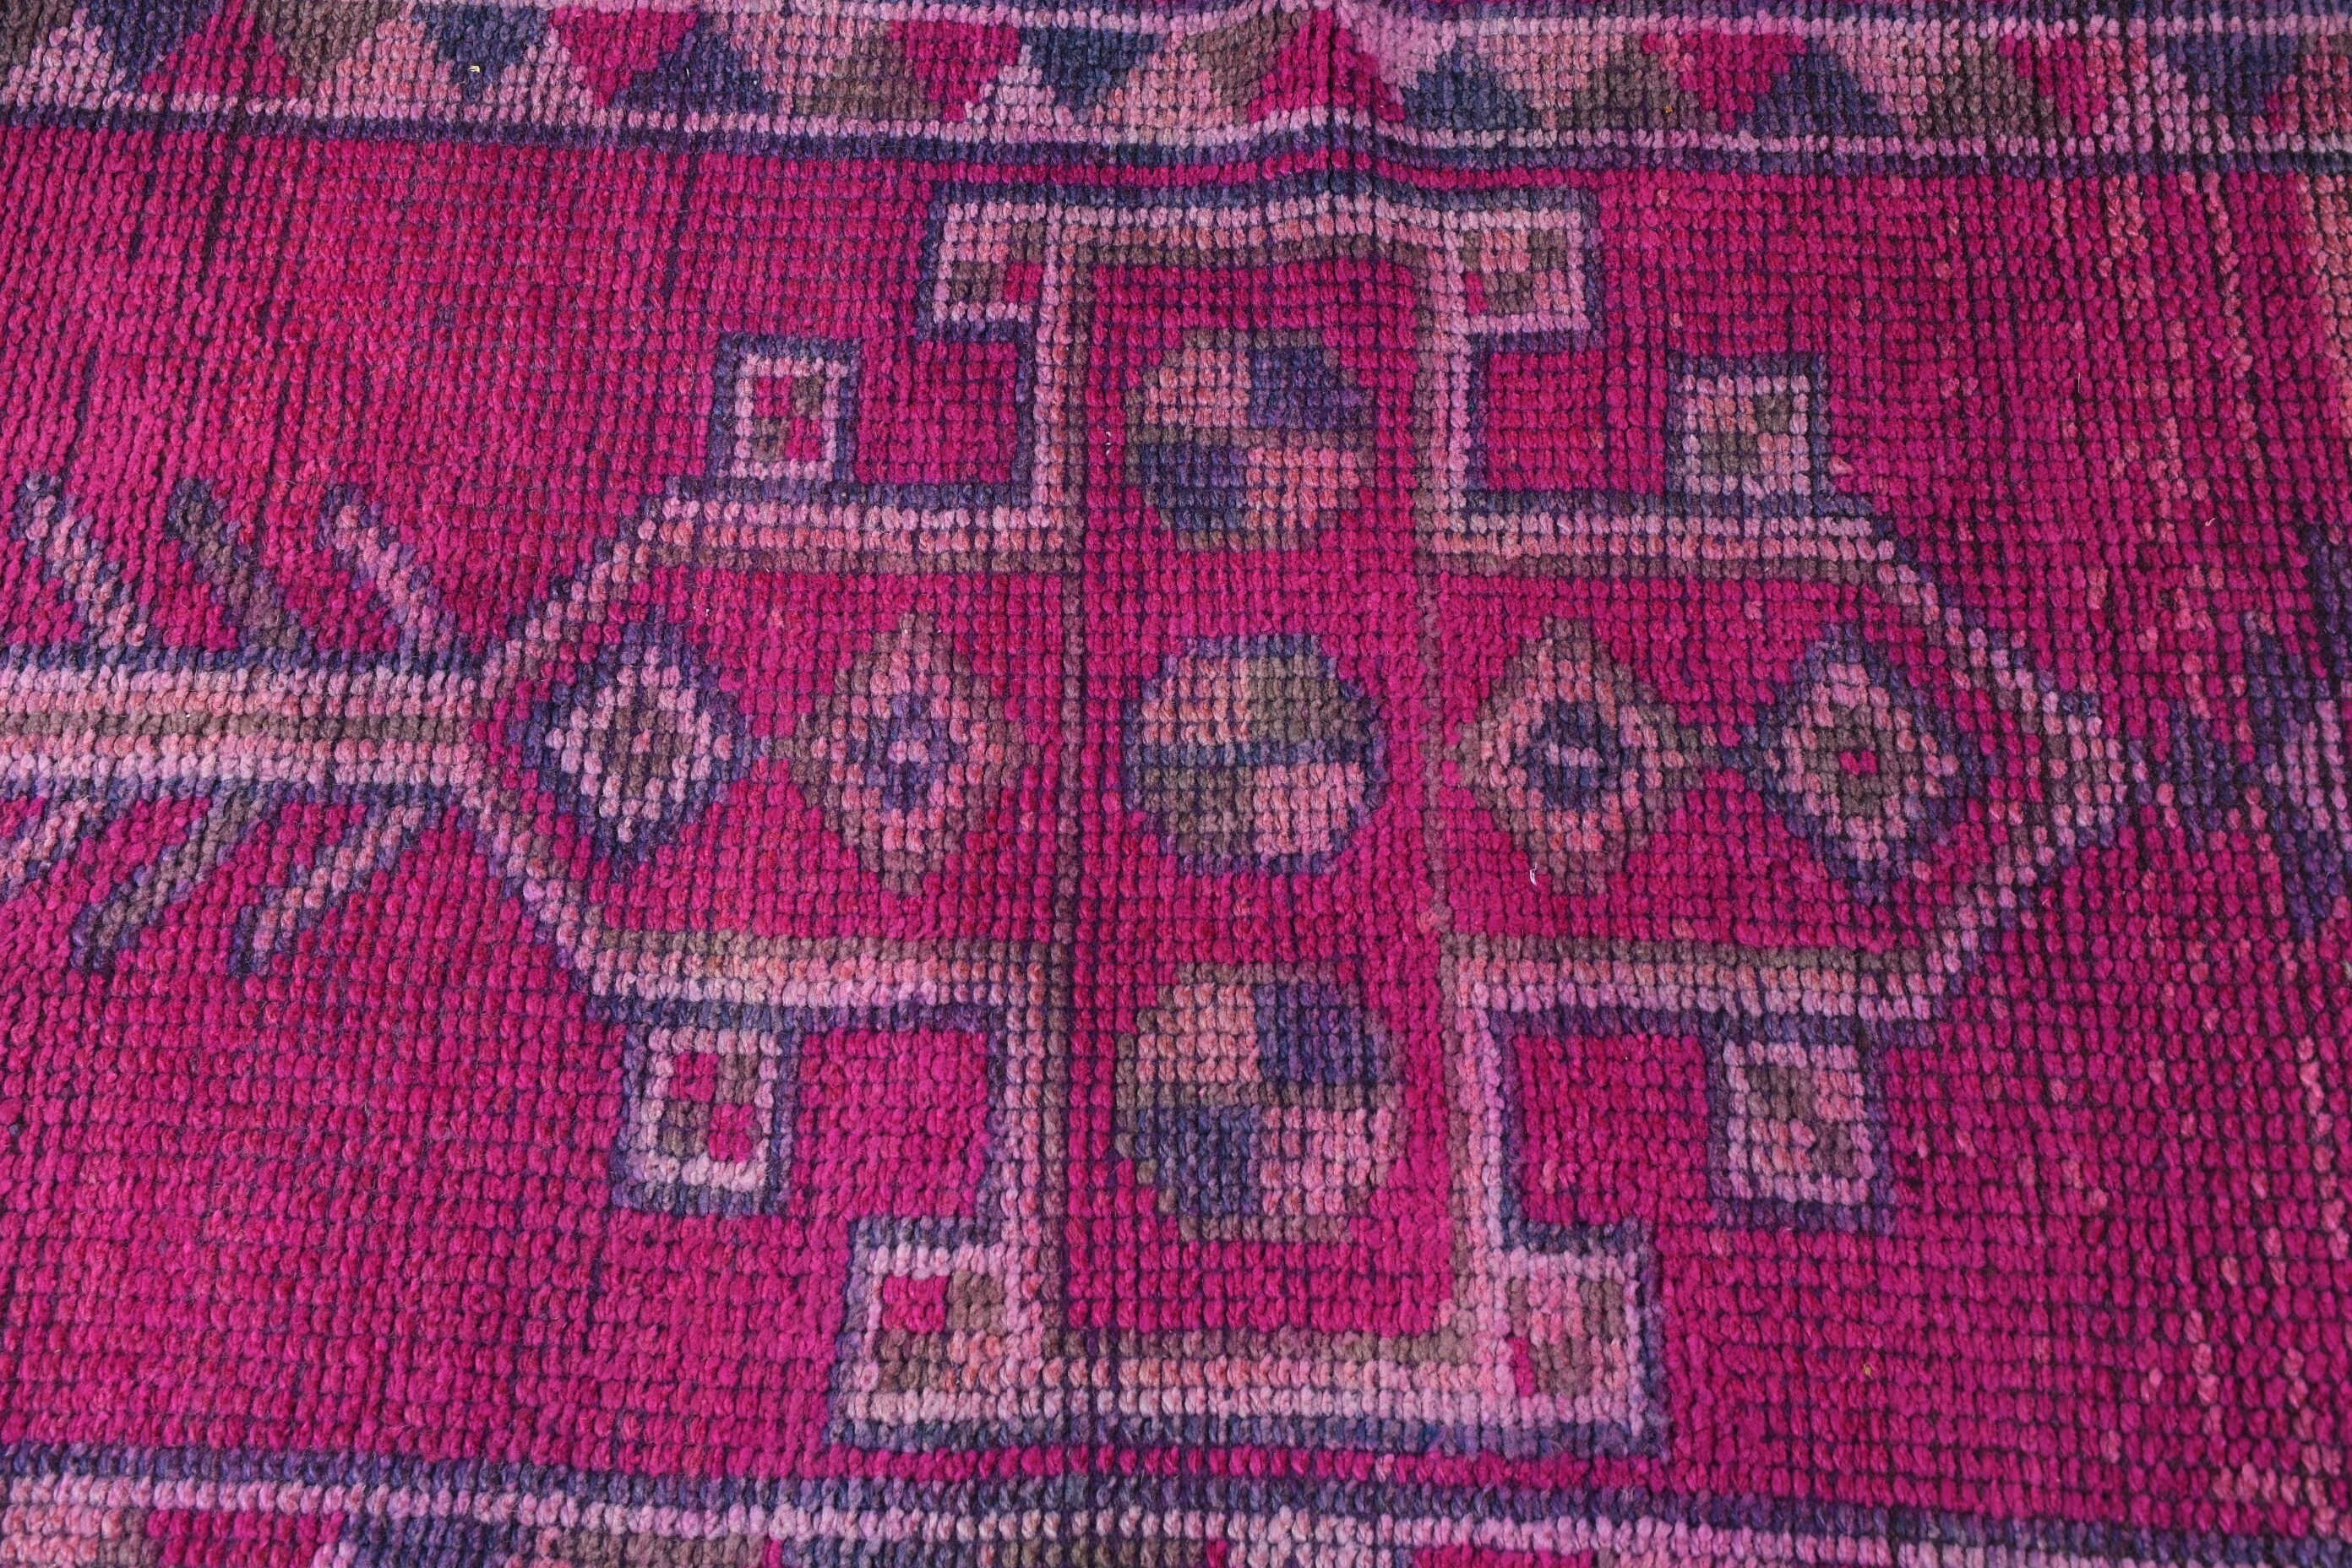 Turkish Rug, Pink Moroccan Rug, 2.8x11.7 ft Runner Rugs, Natural Rug, Vintage Rug, Antique Rug, Moroccan Rug, Hallway Rug, Rugs for Kitchen